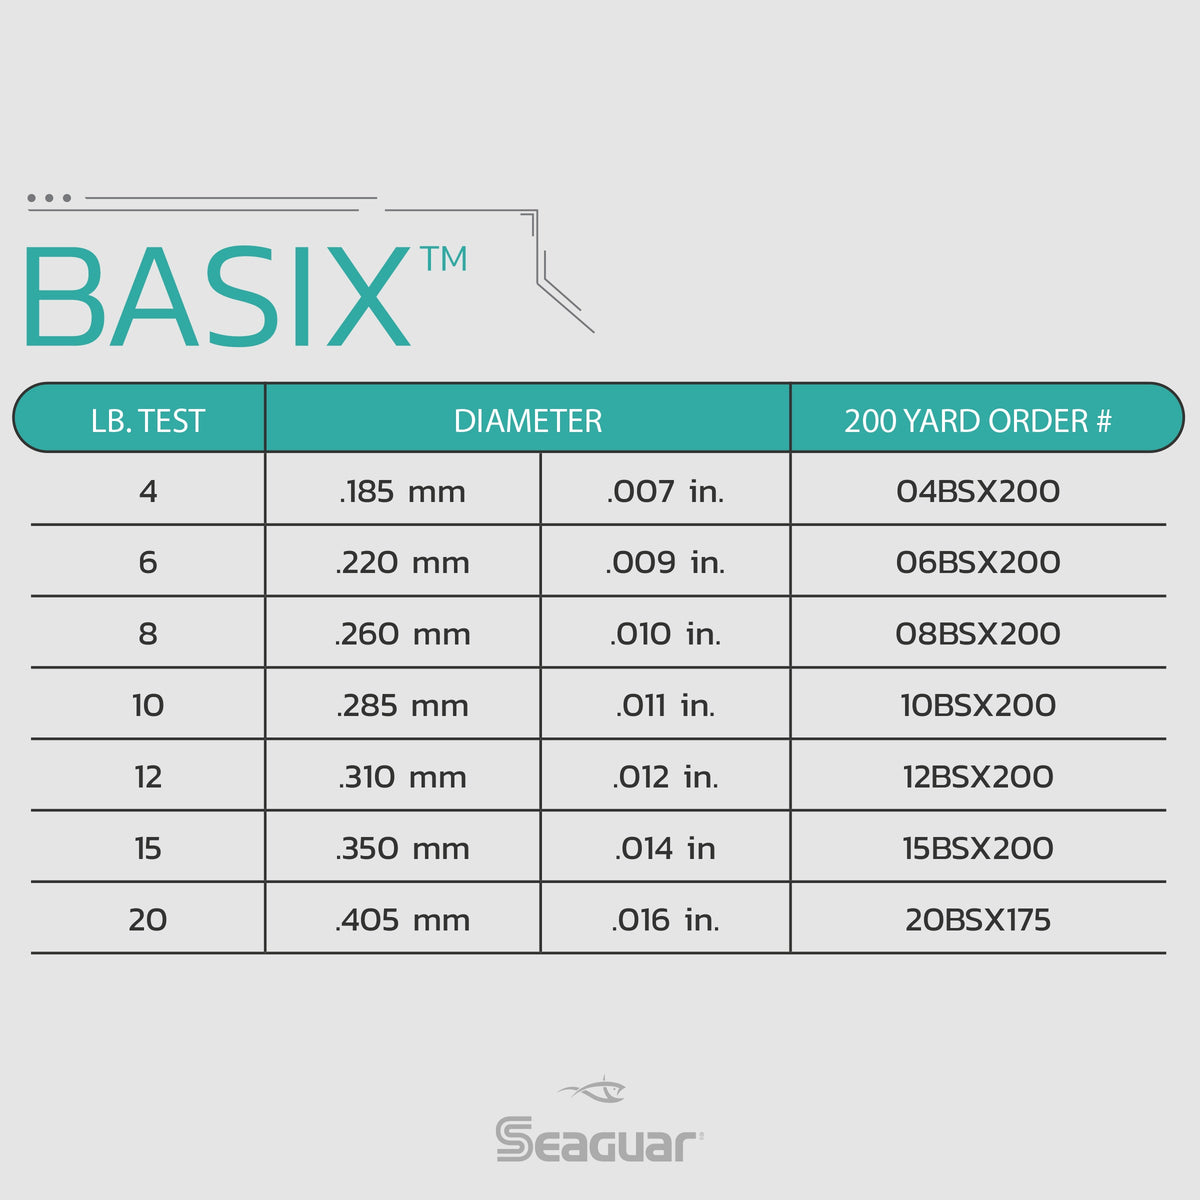 BasiX™